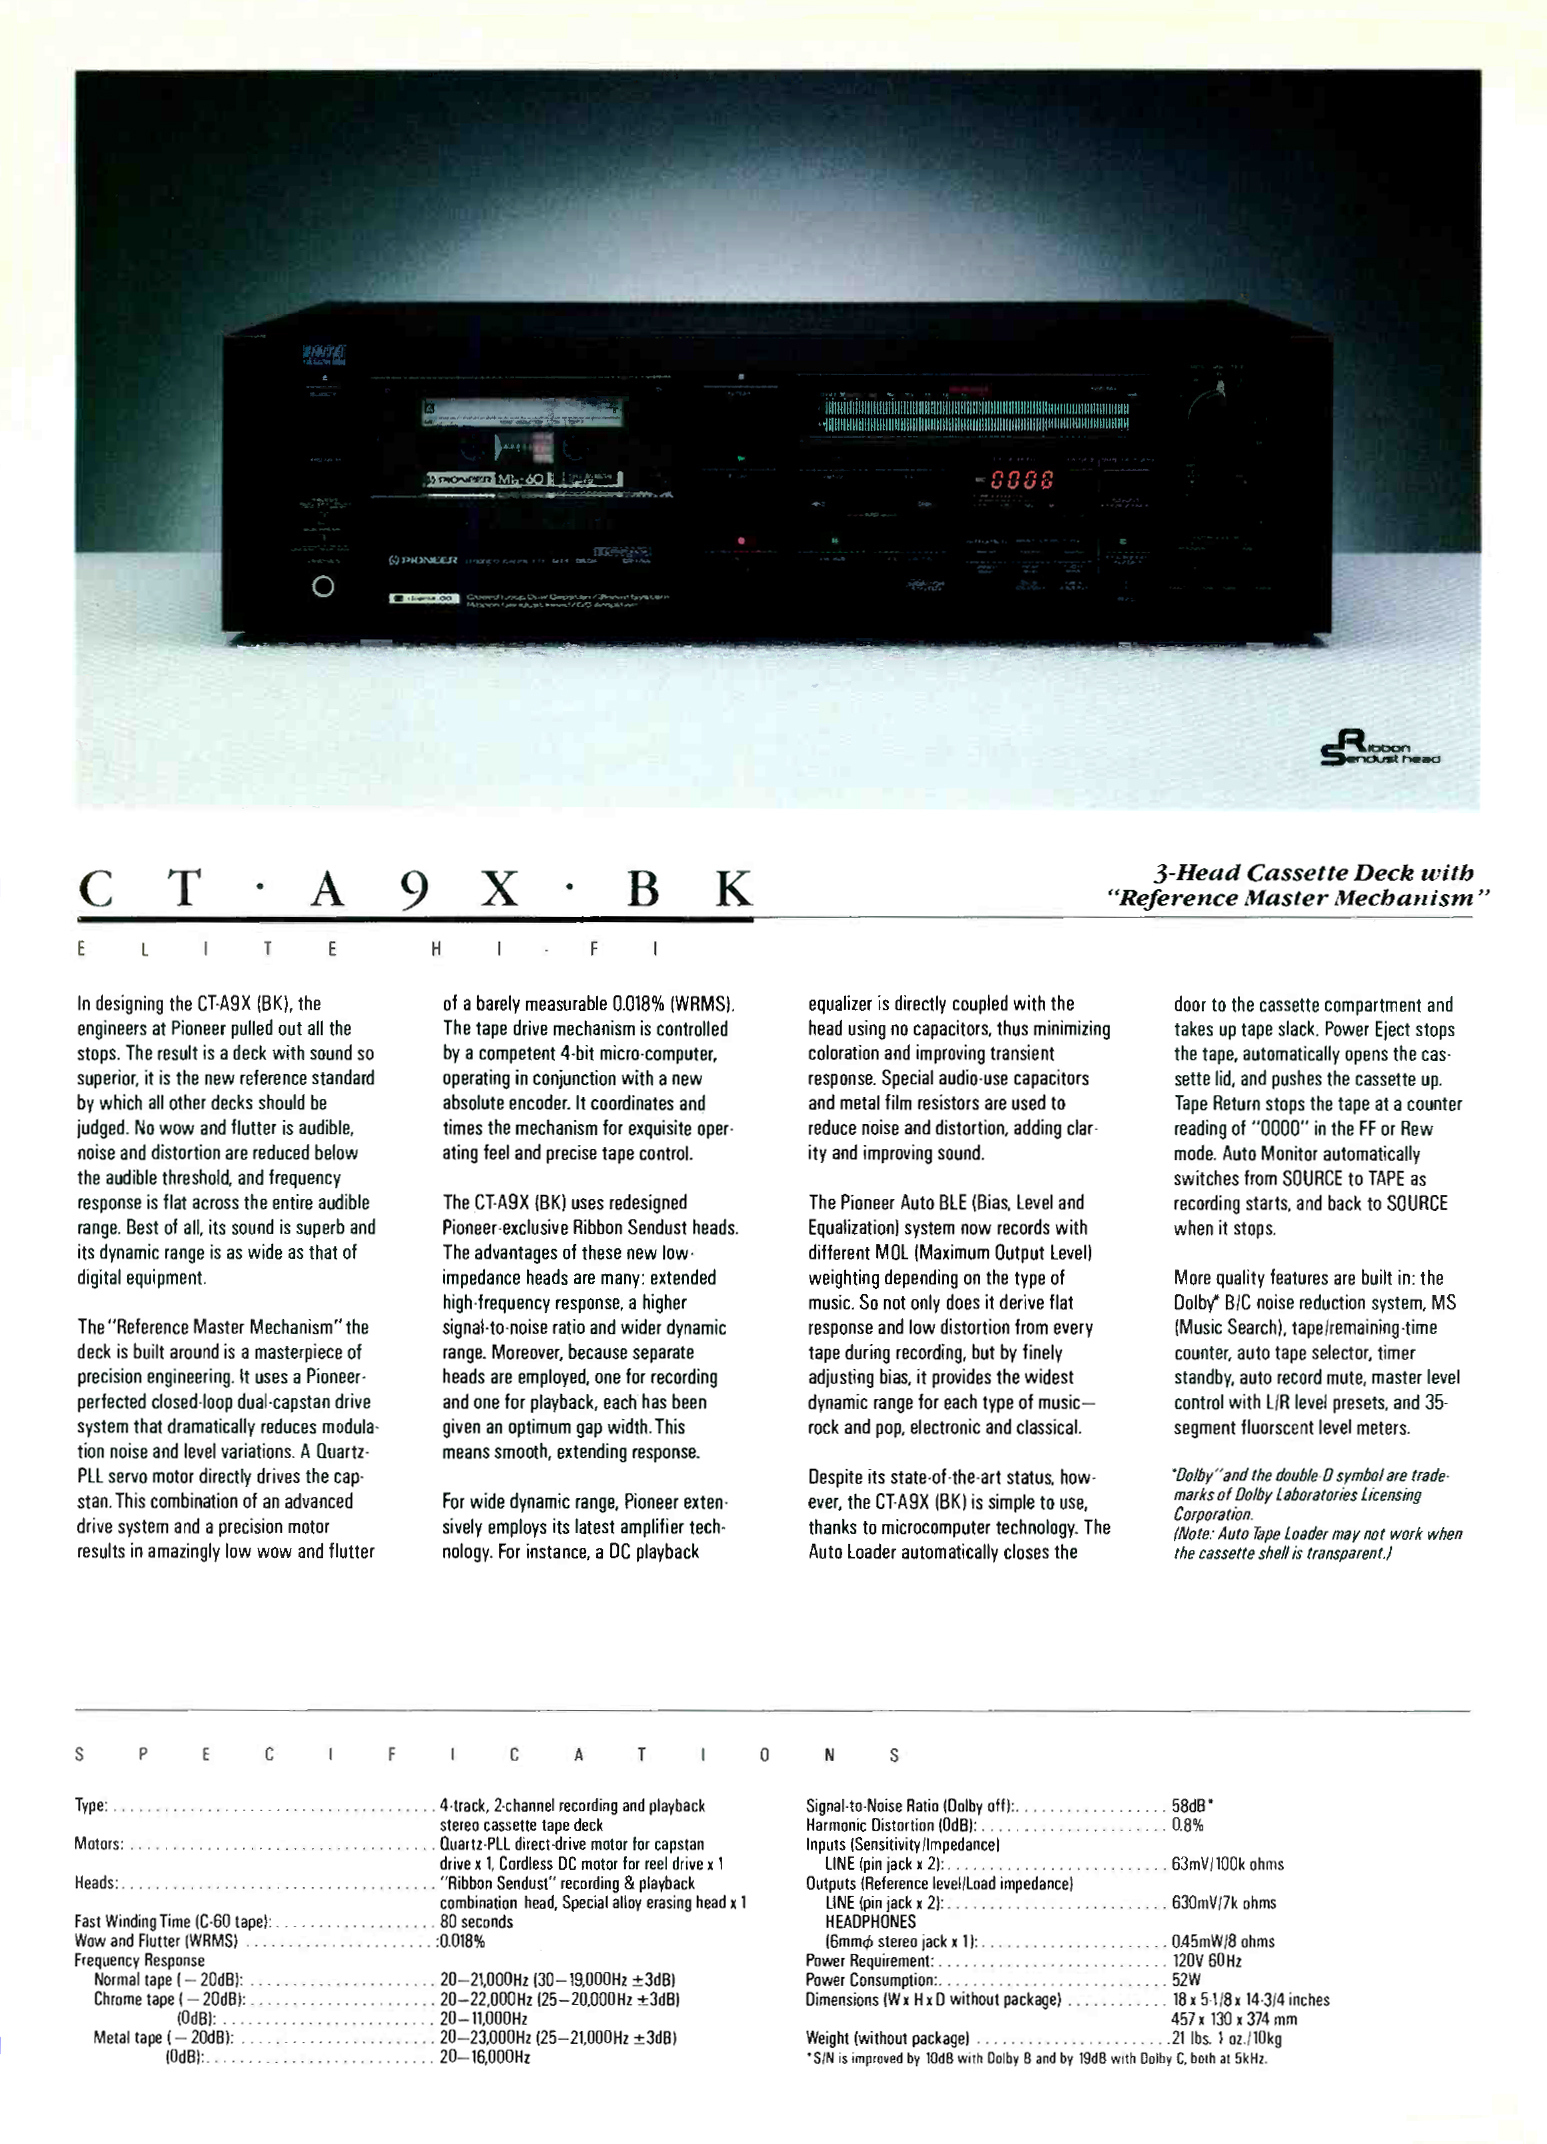 1985 Pioneer Elite Katalog-7.jpg